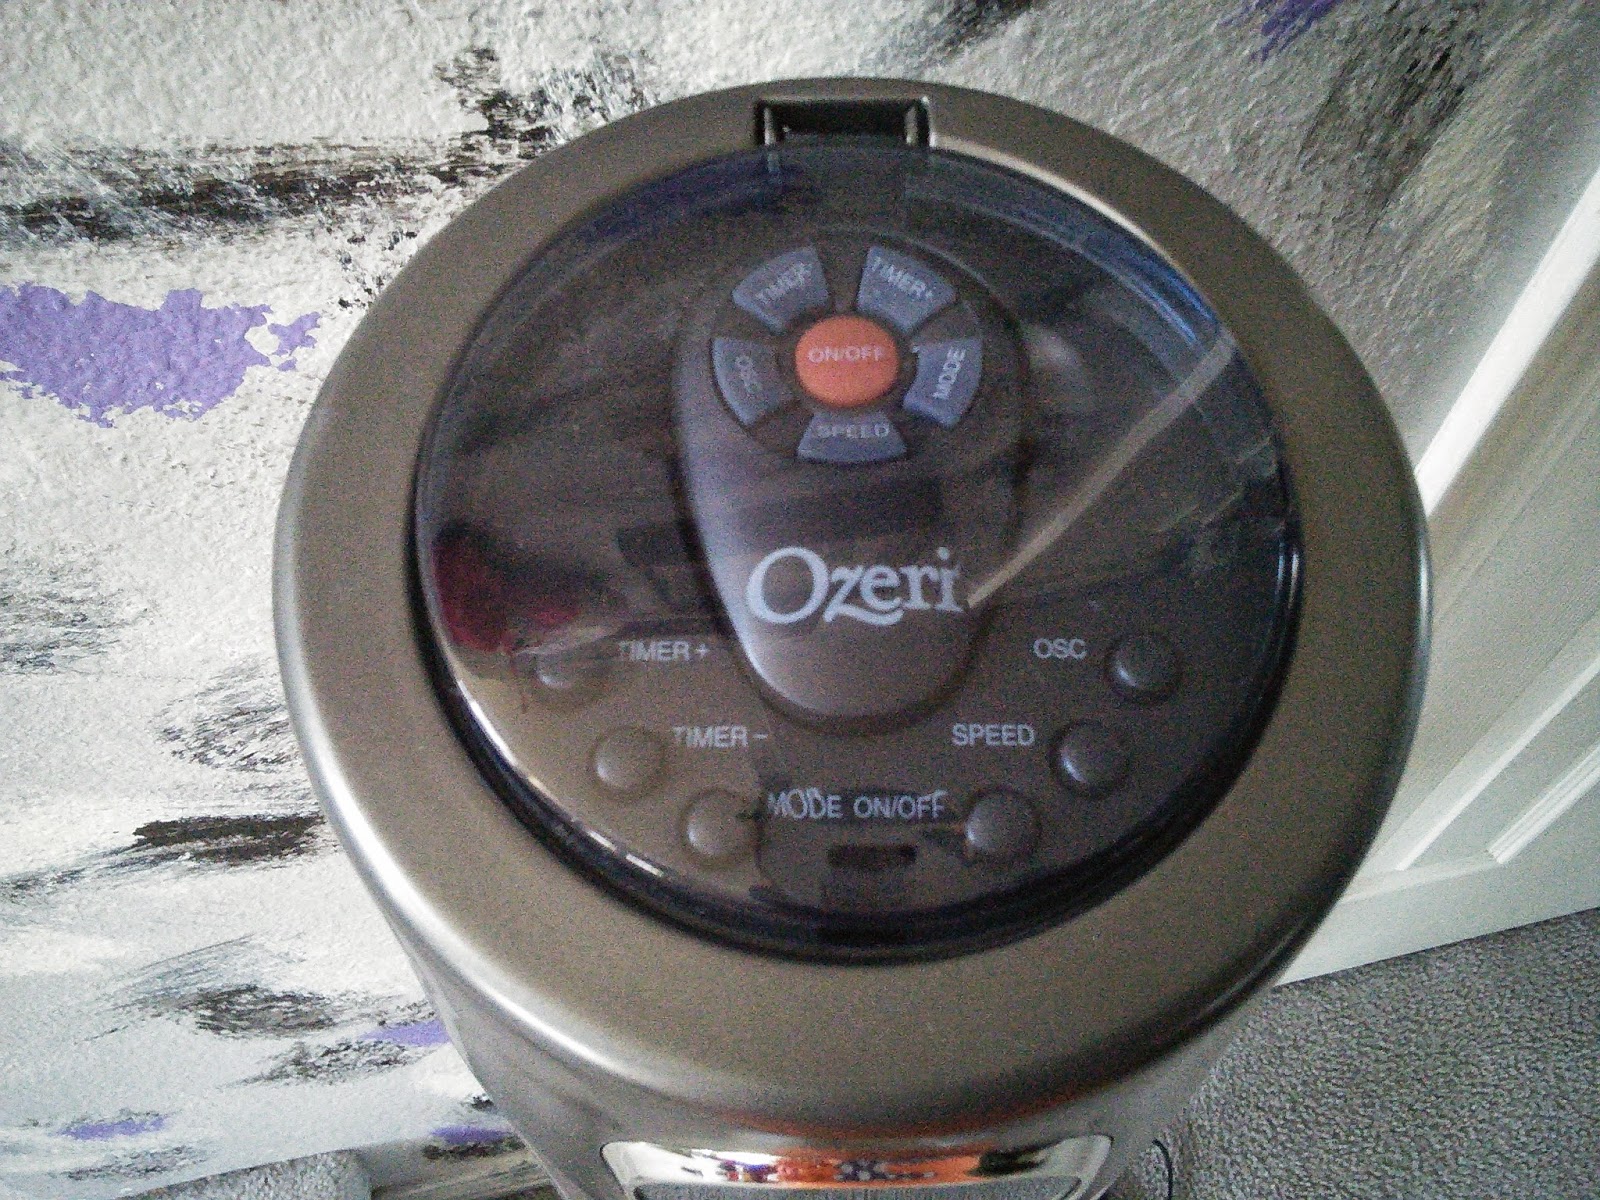 Ozeri Ultra 42 in. Wind Fan Adjustable Oscillating Tower Fan with